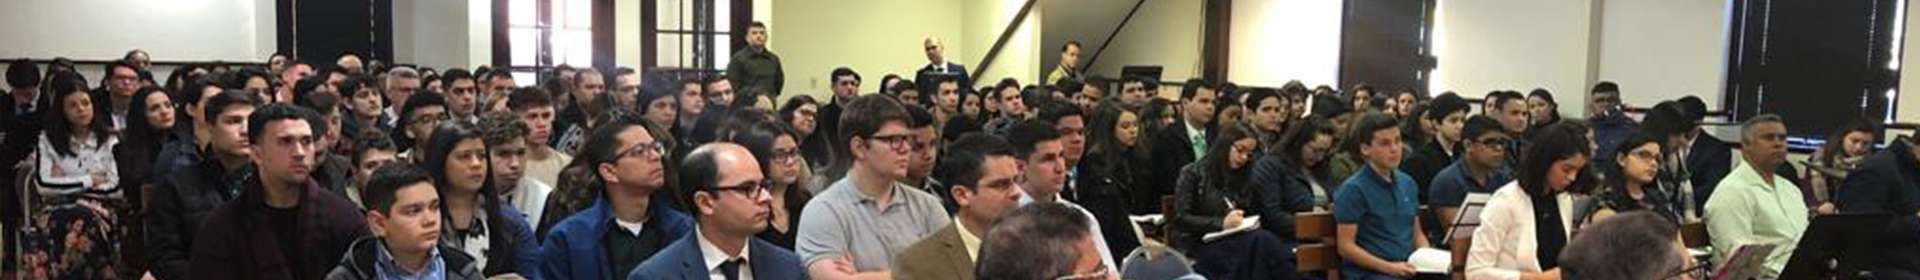 Seminário de Jovens em Connecticut, EUA, reúne cerca de 180 pessoas